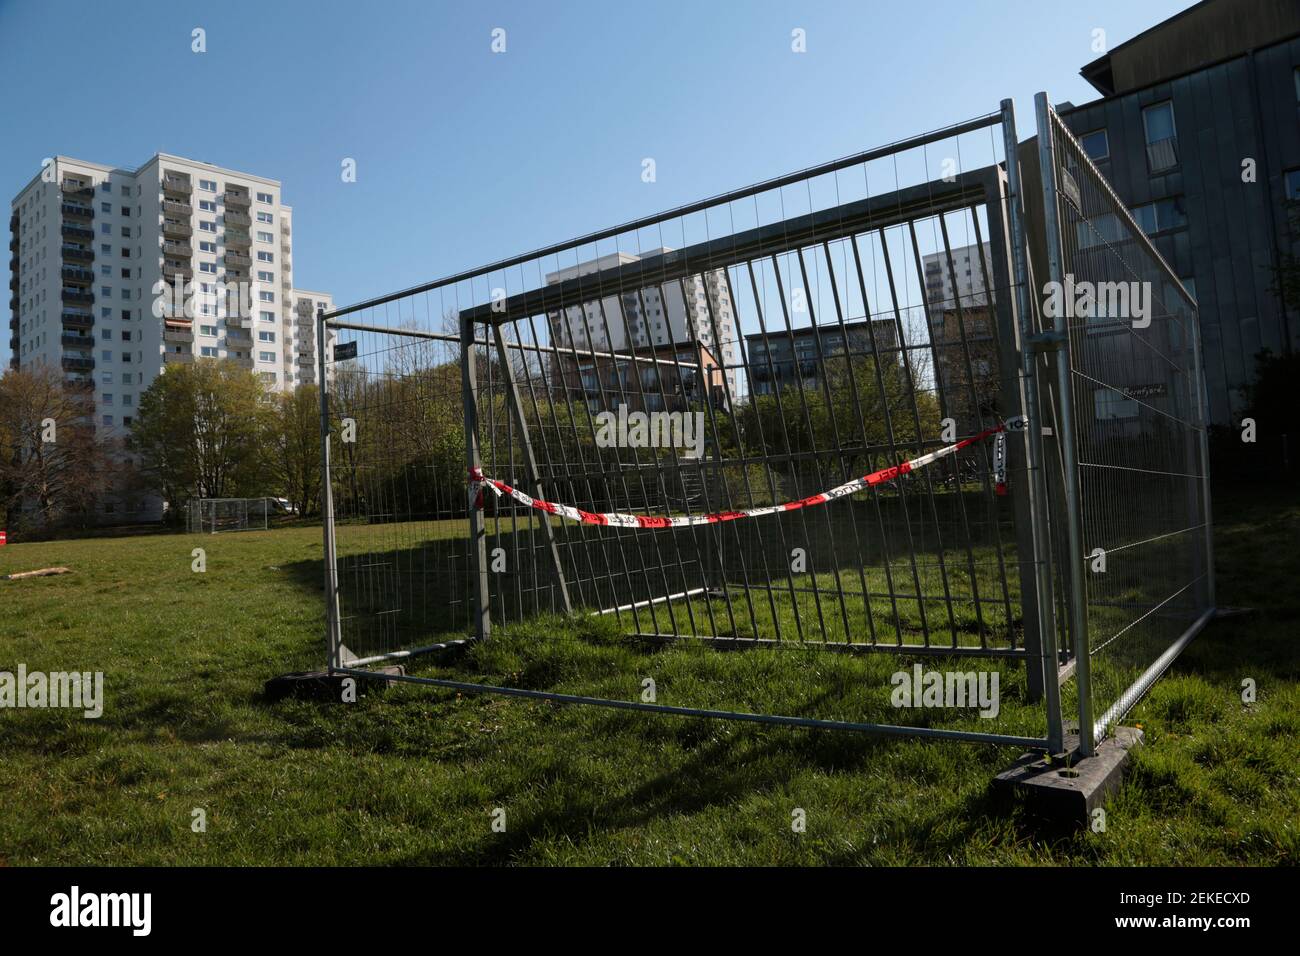 Un but de football bloqué par une crise de corona sur un terrain de jeu dans une zone verte publique à Hambourg, en Allemagne Banque D'Images